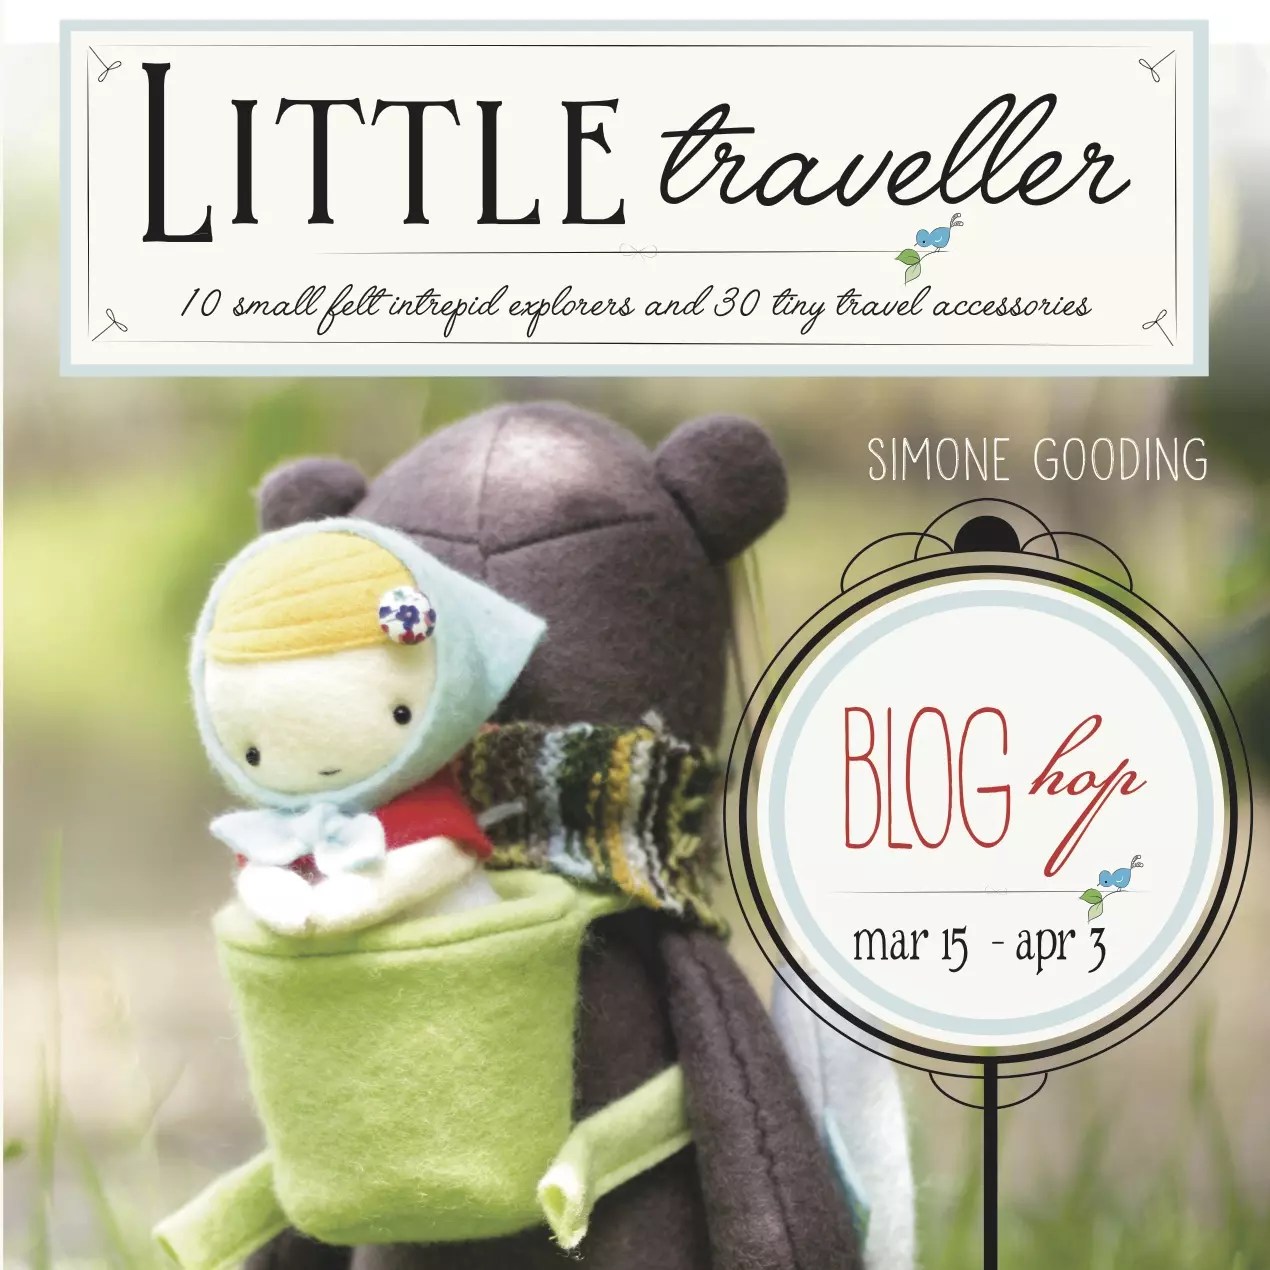 The Tiny Little Traveller, The Tiny Little Traveller